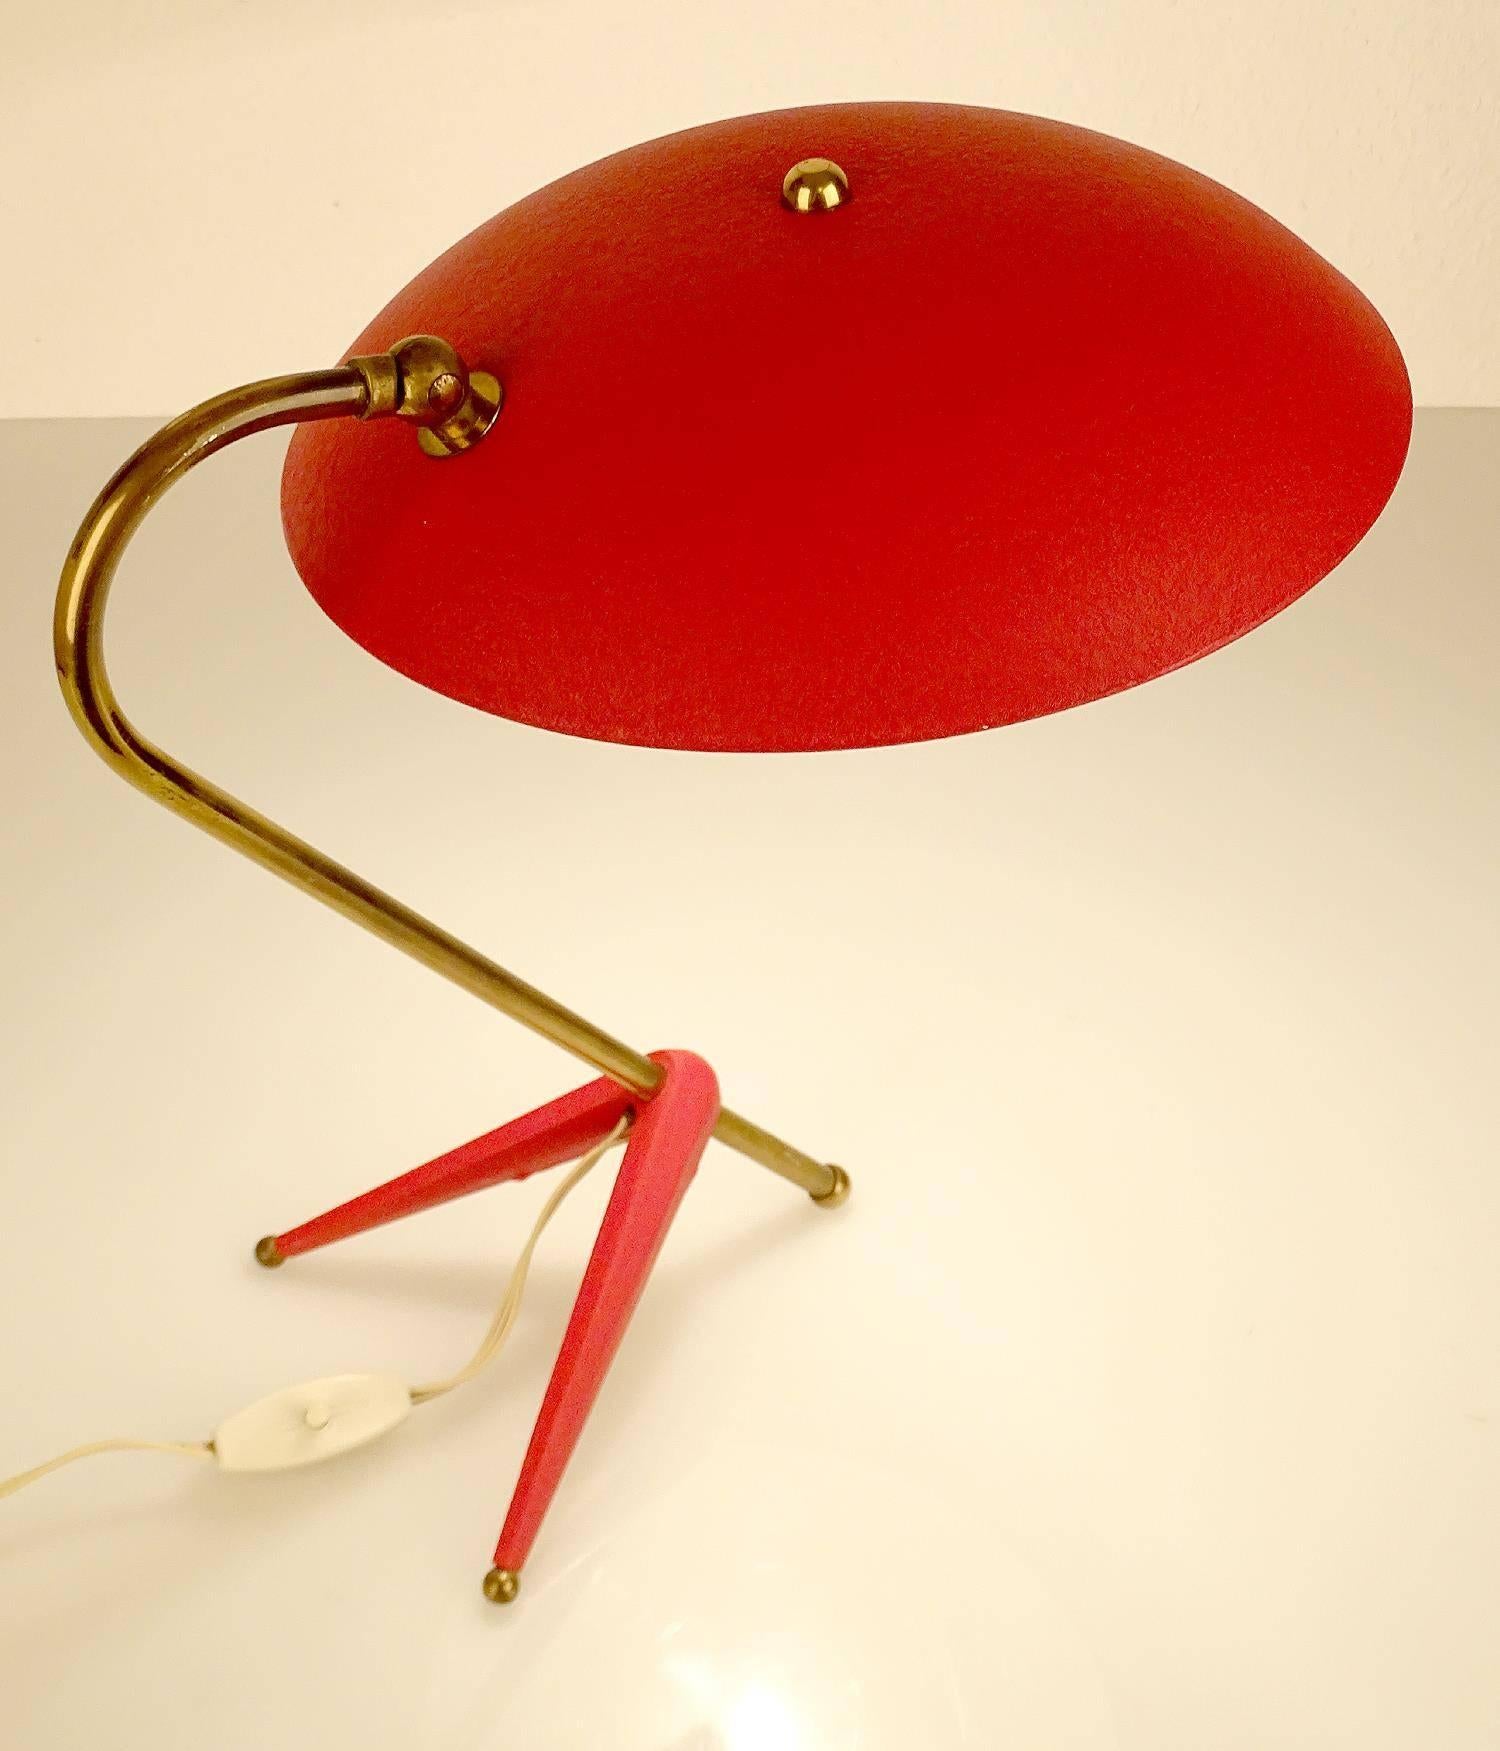 Mid-Century Modern Stilnovo  Style Table Lamp, 1950s Italian Modernist Design  